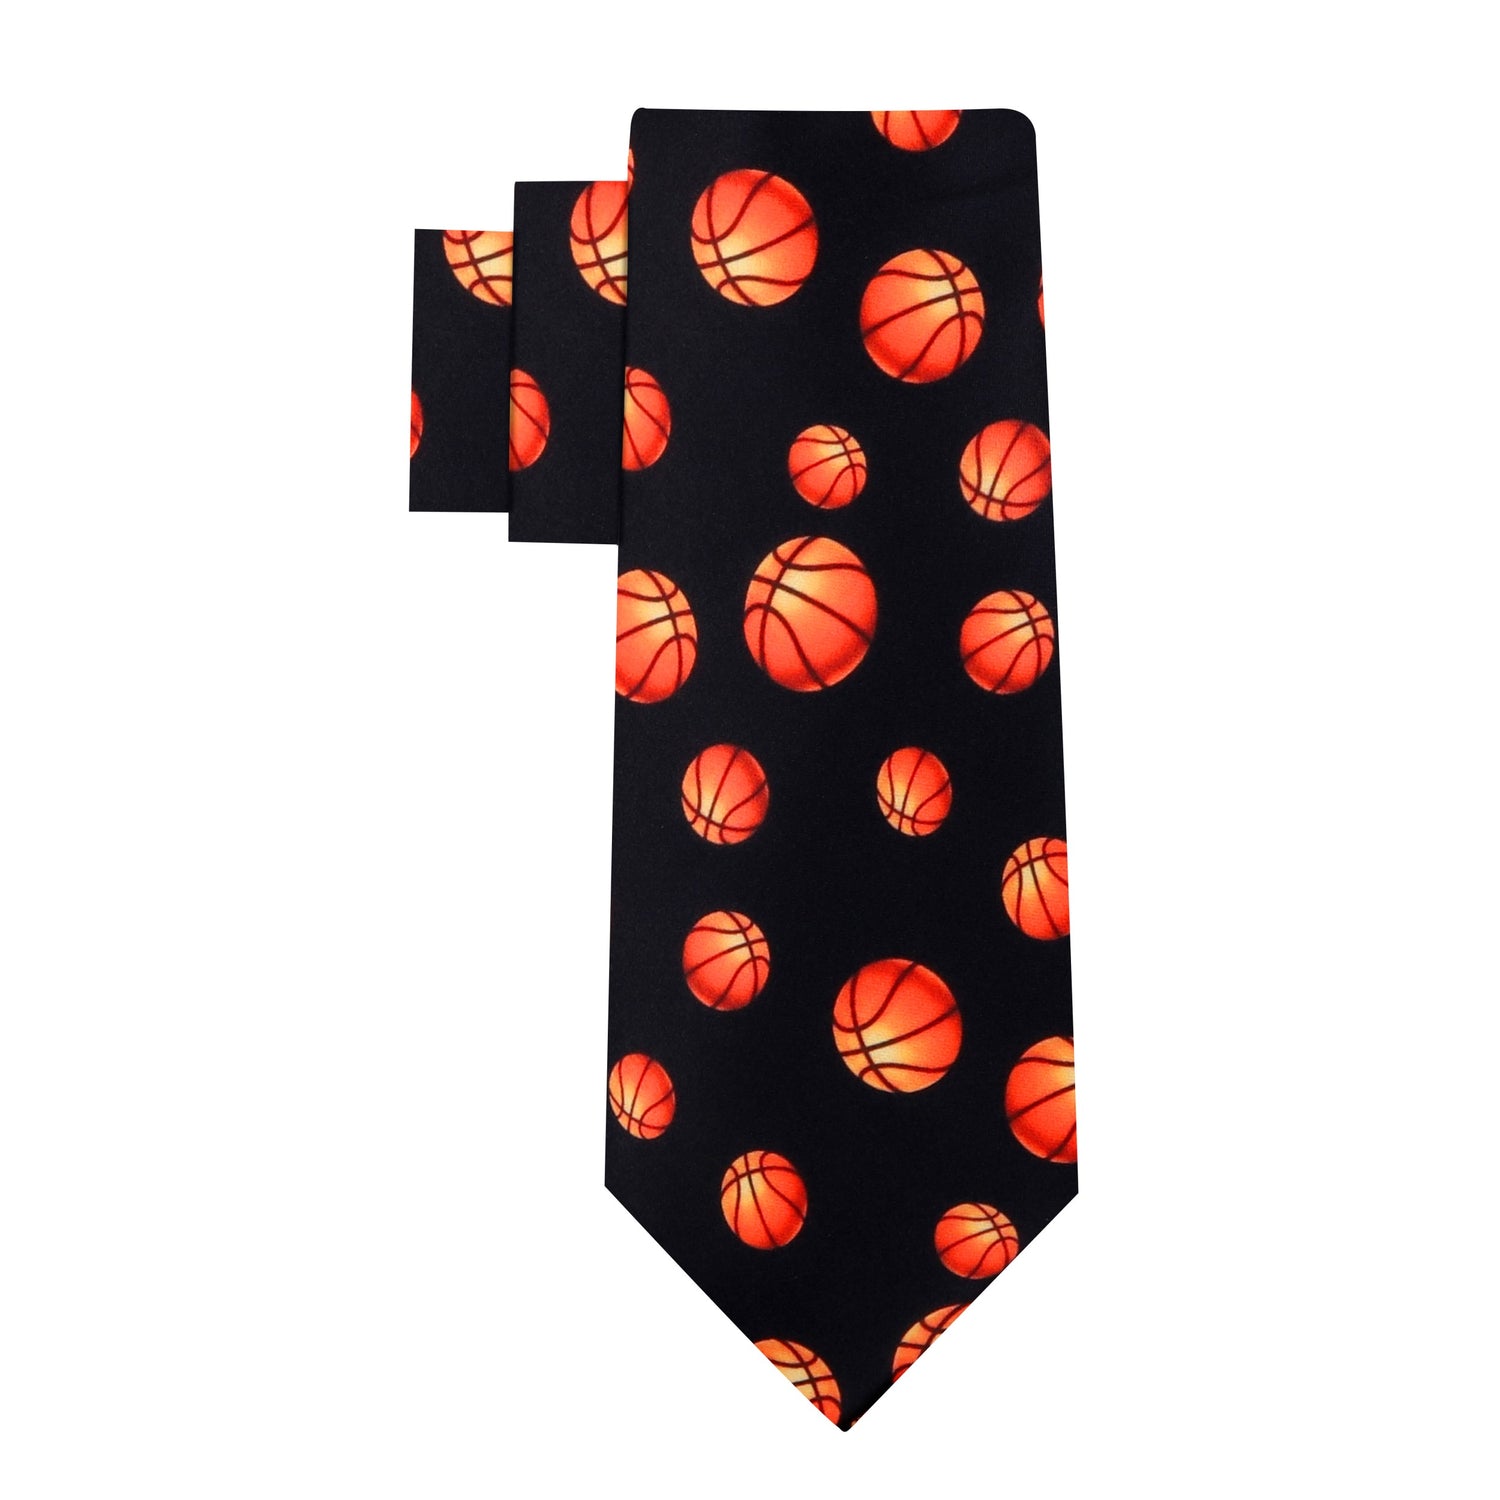 Black and Orange Basketball Necktie 12